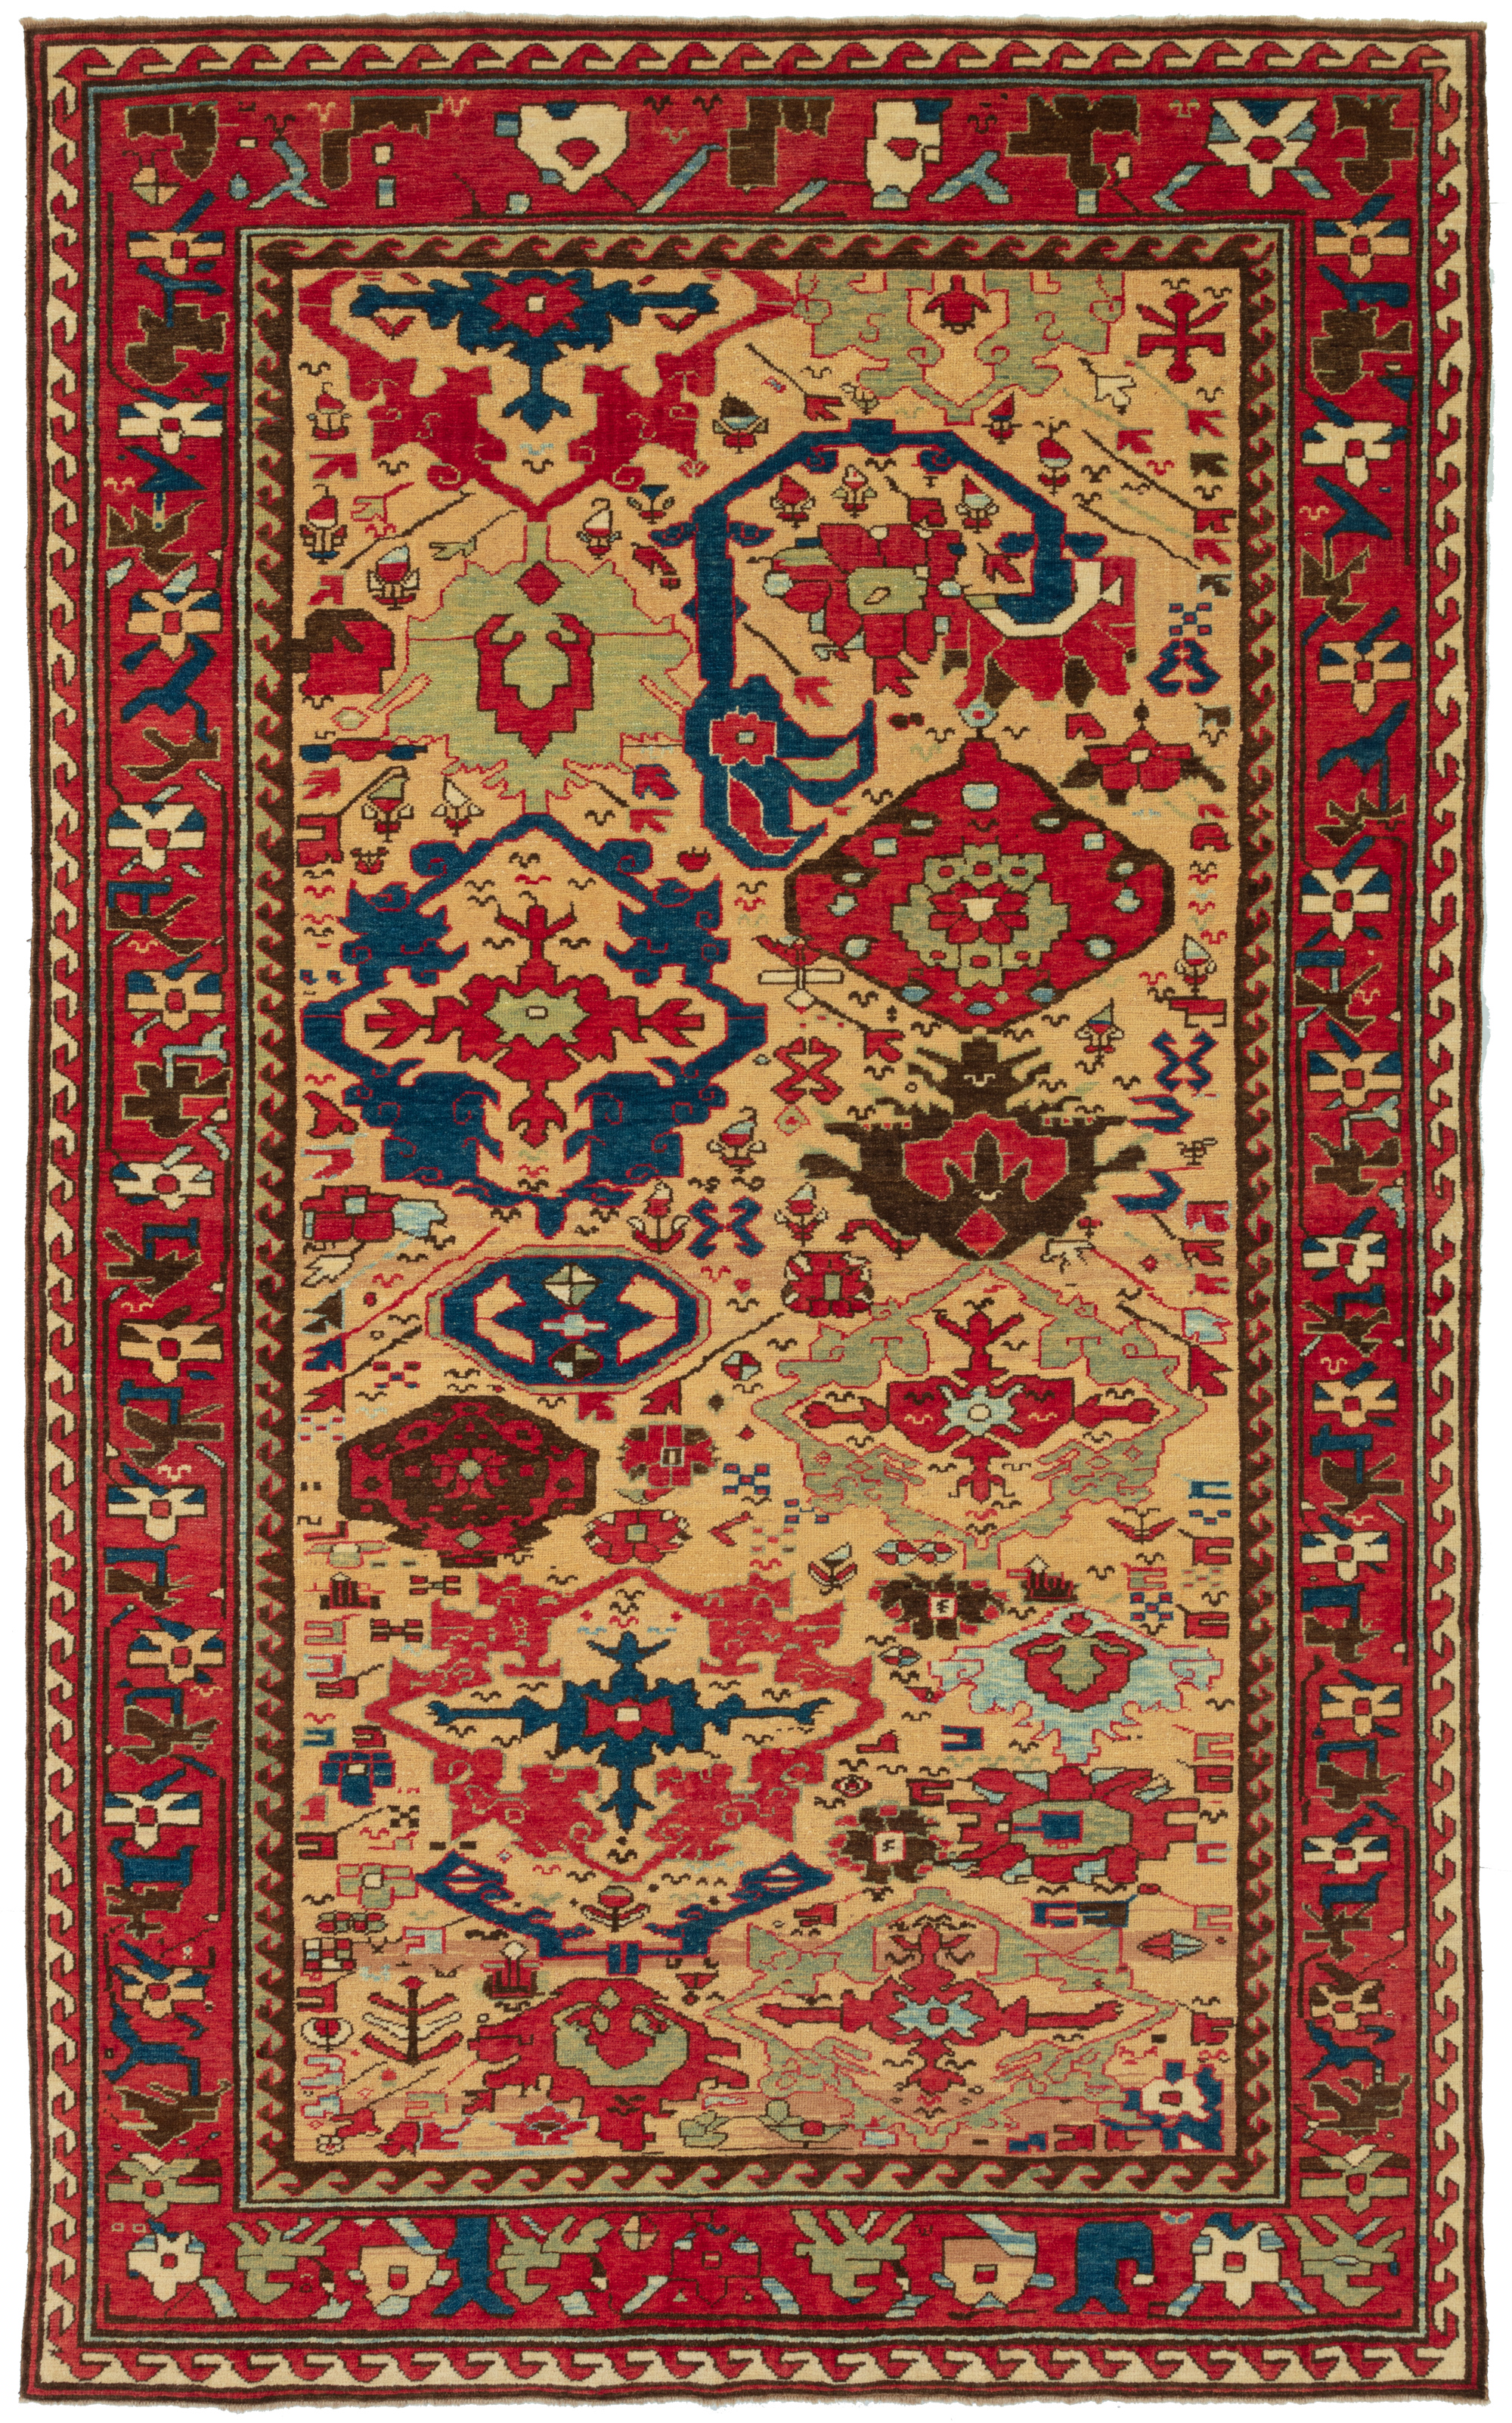 アゼルバイジャン・ハルシャンデザインの絨毯 Azerbaijan Harshang Desing Carpet 青山キリムハウス ペルシャ絨毯 トルコ 絨毯キリム専門店 C50563